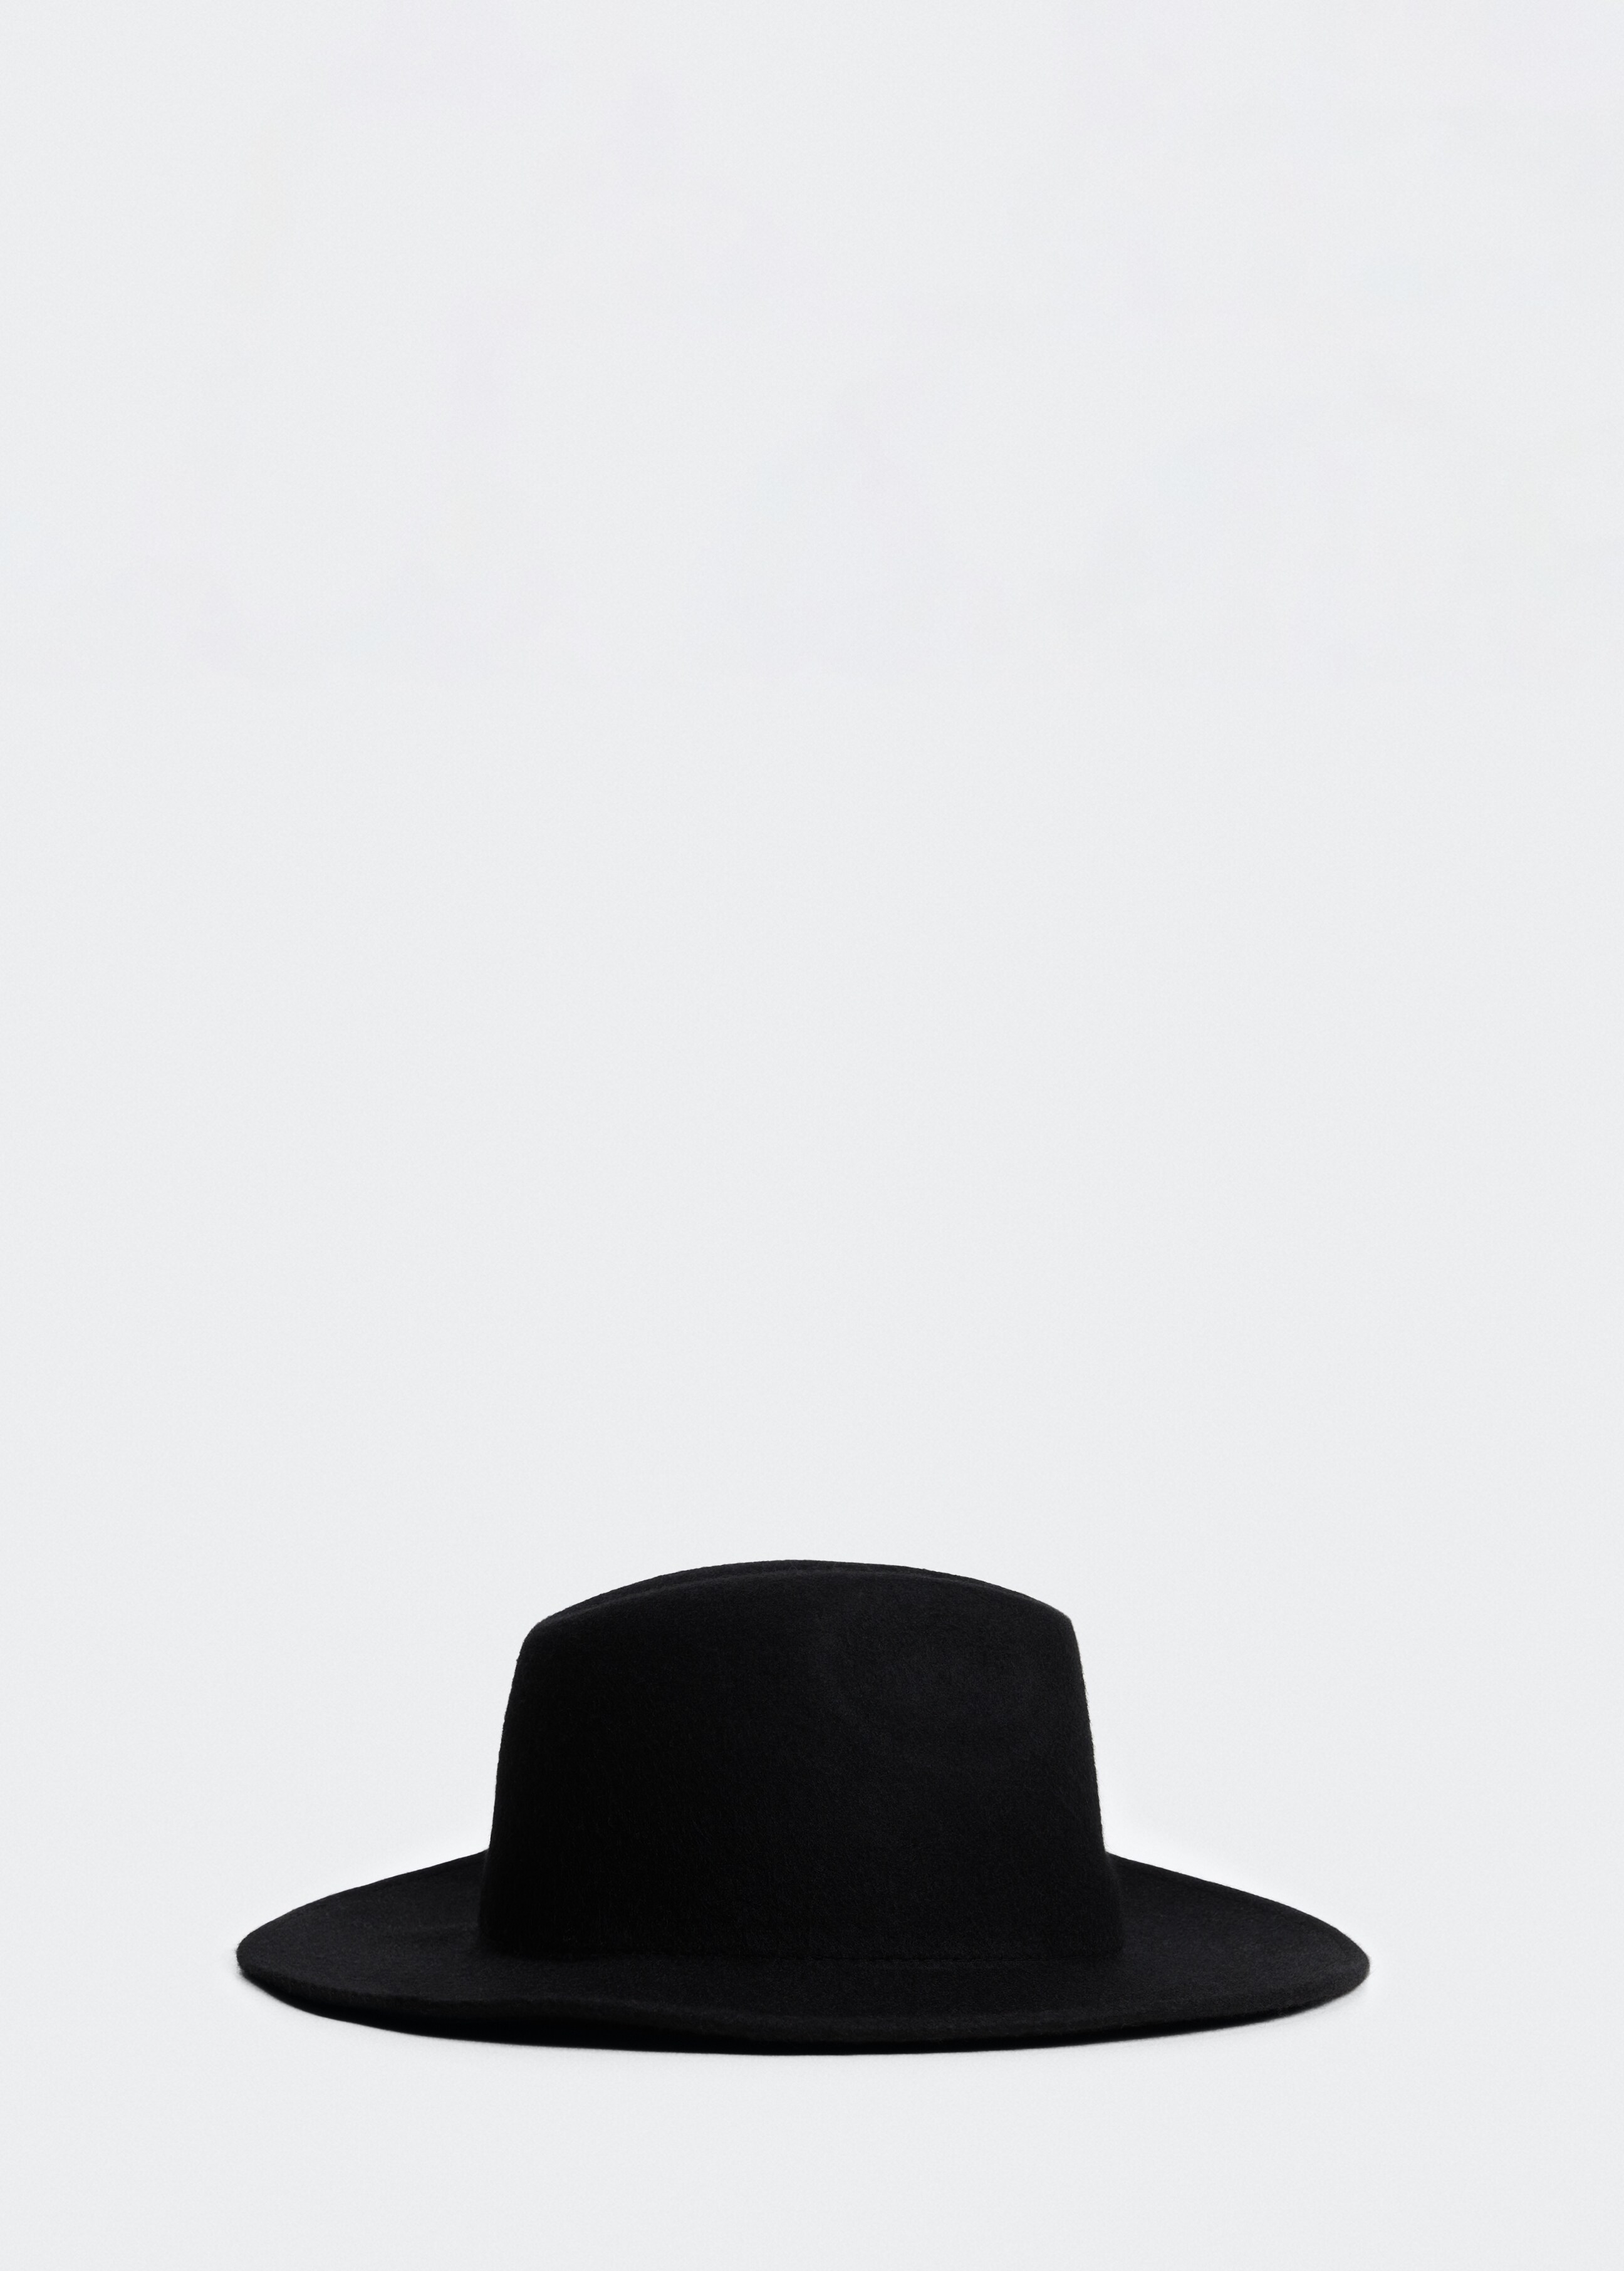 Sombrero 100% lana - Artículo sin modelo